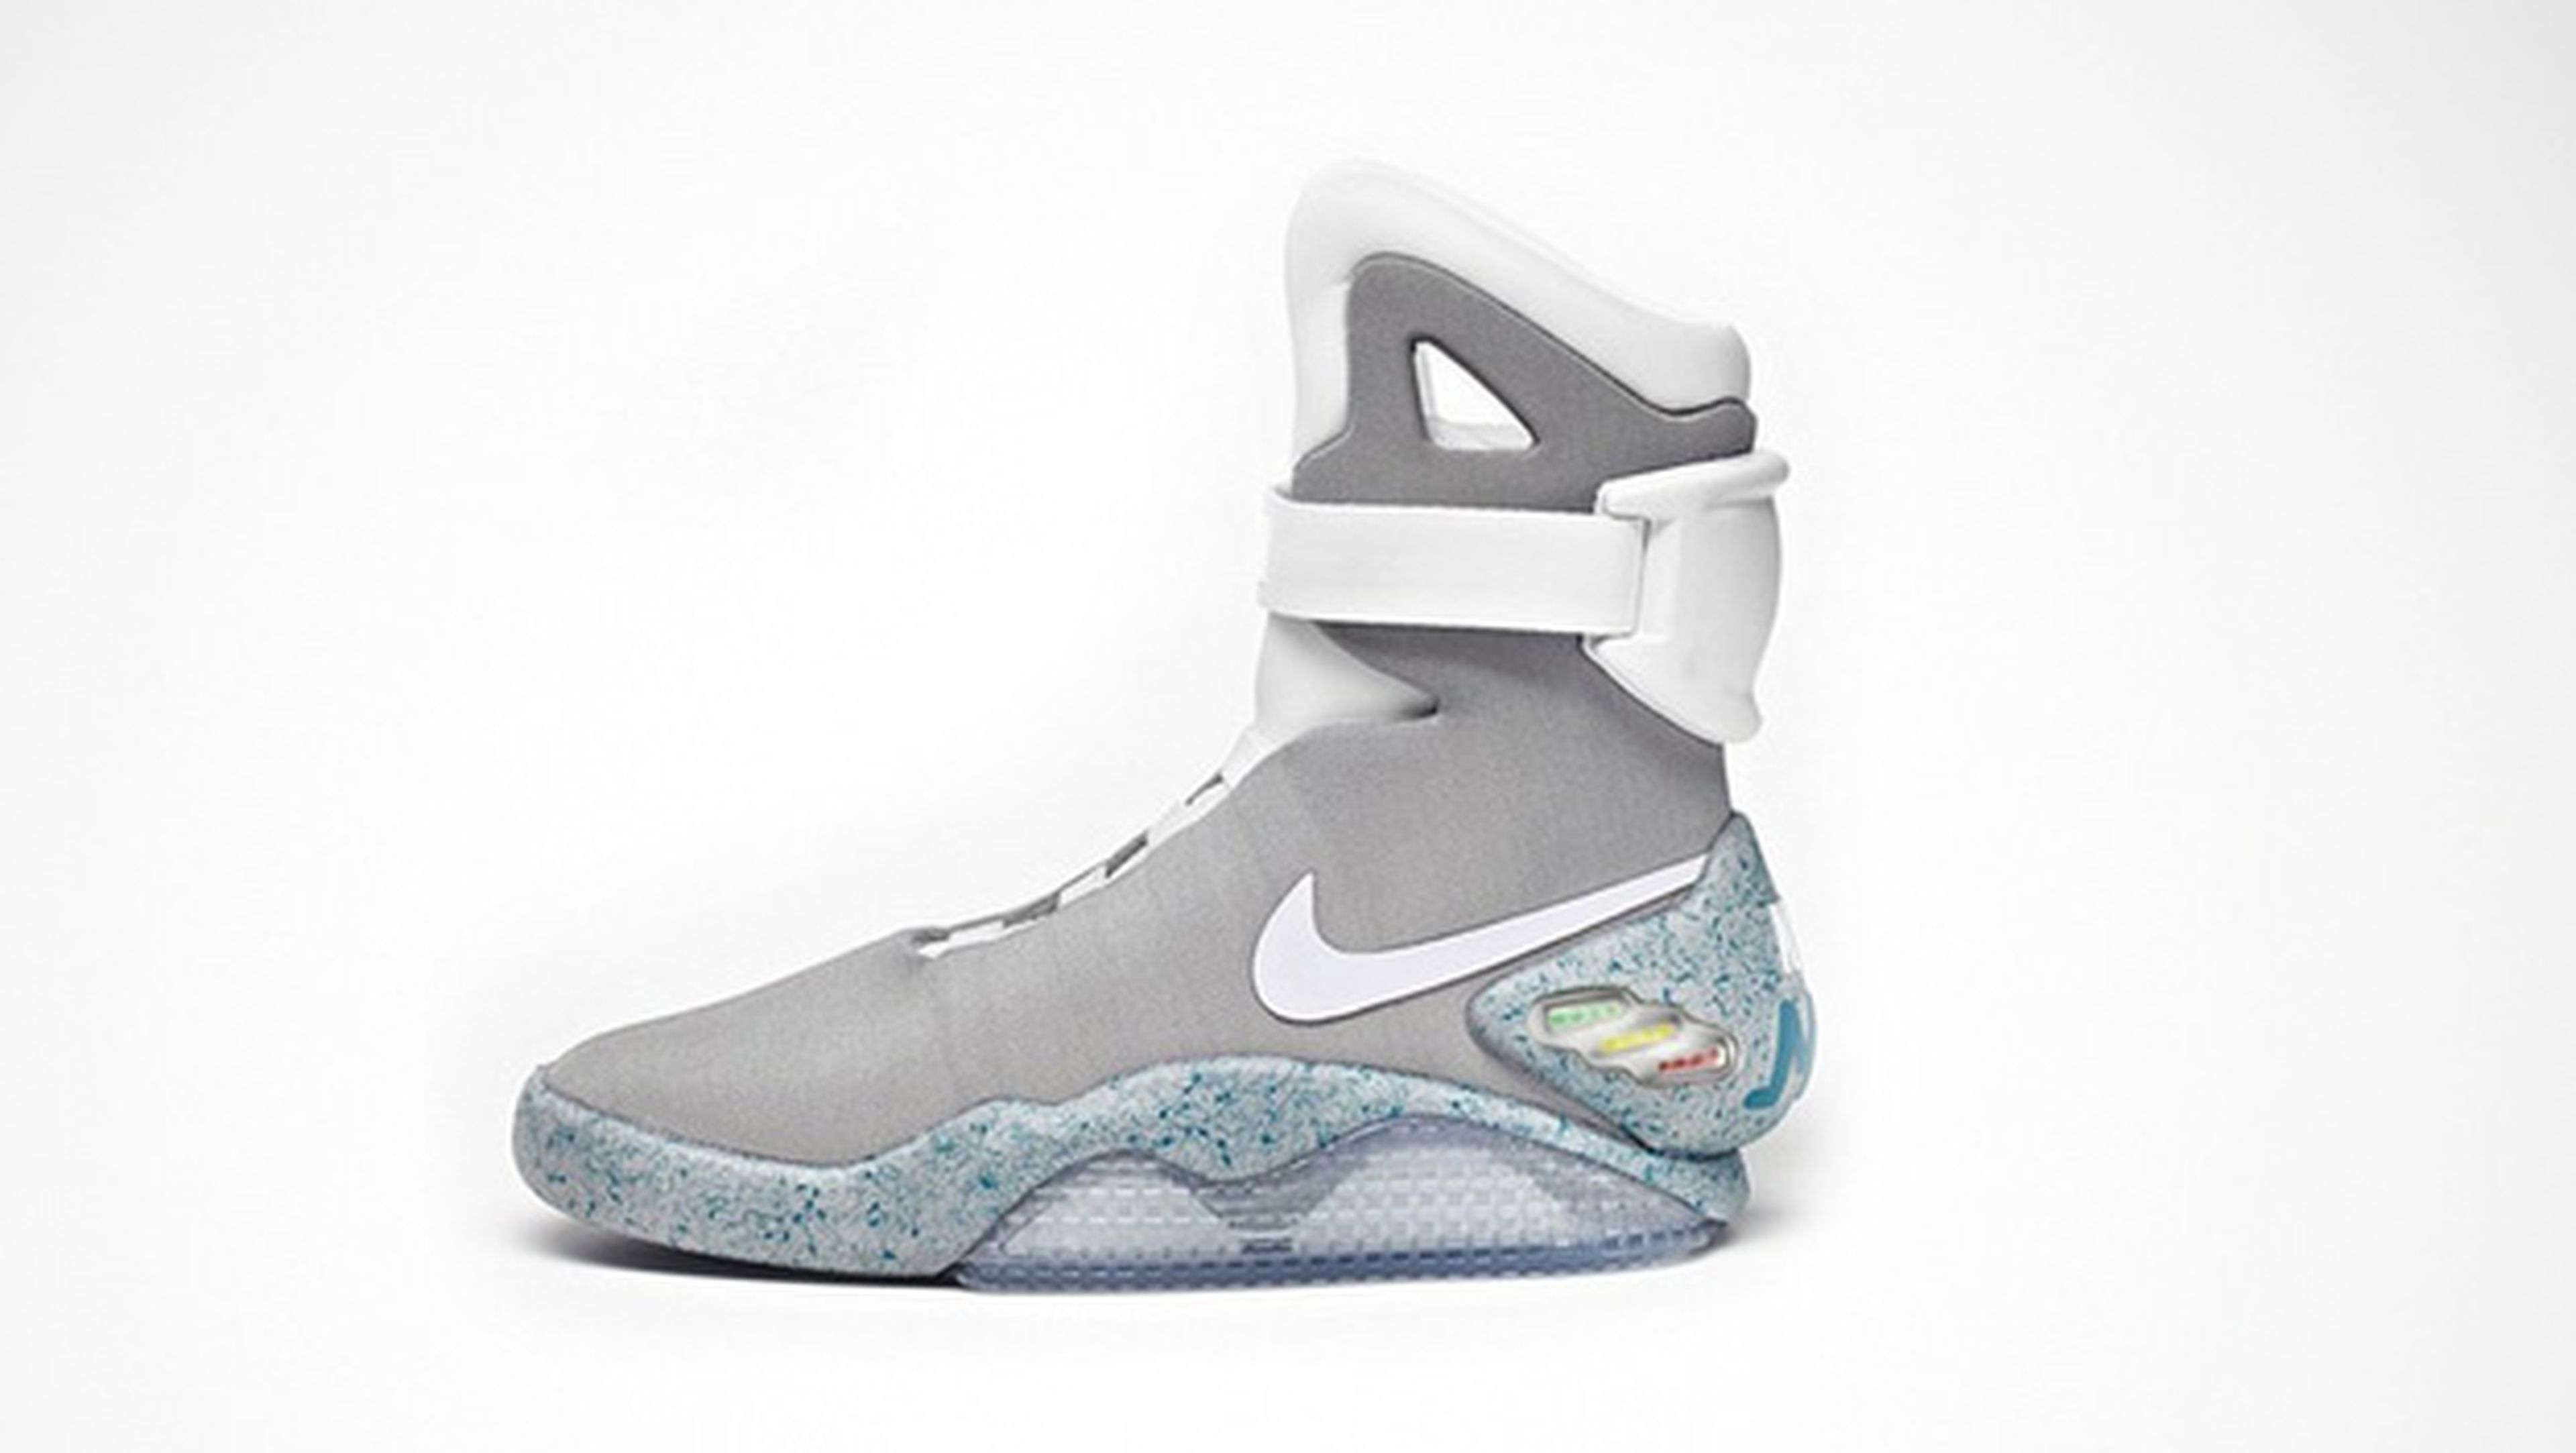 Nike lanzará las zapatillas de Regreso al futuro 2015 | Computer Hoy